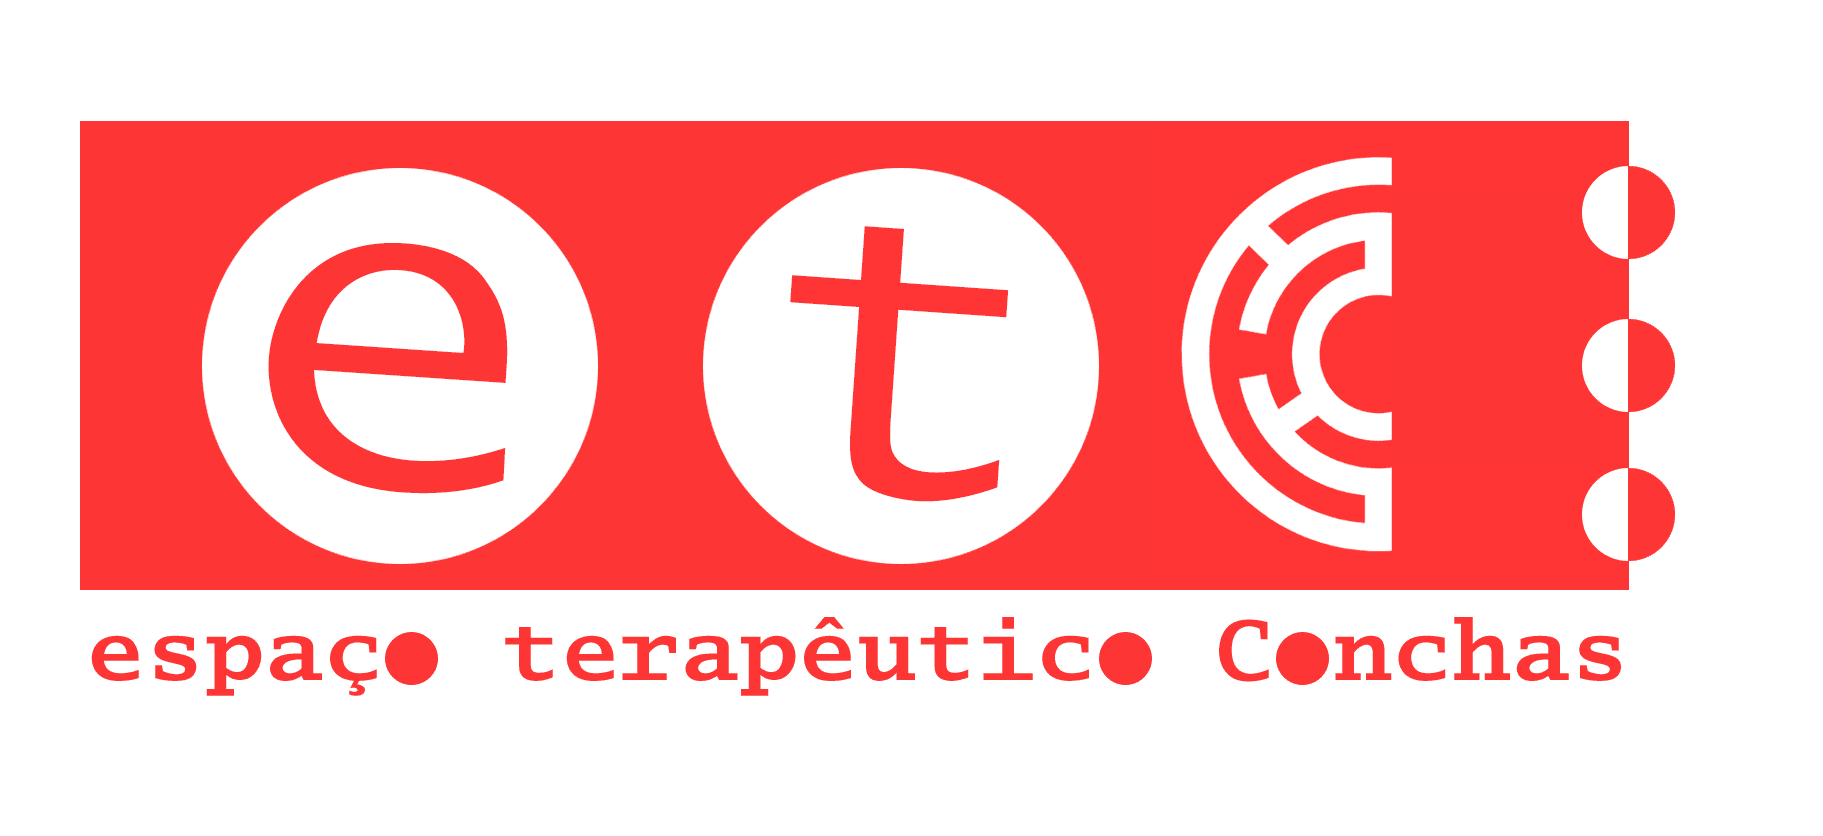 ETC - Espaço Terapêutico Conchas